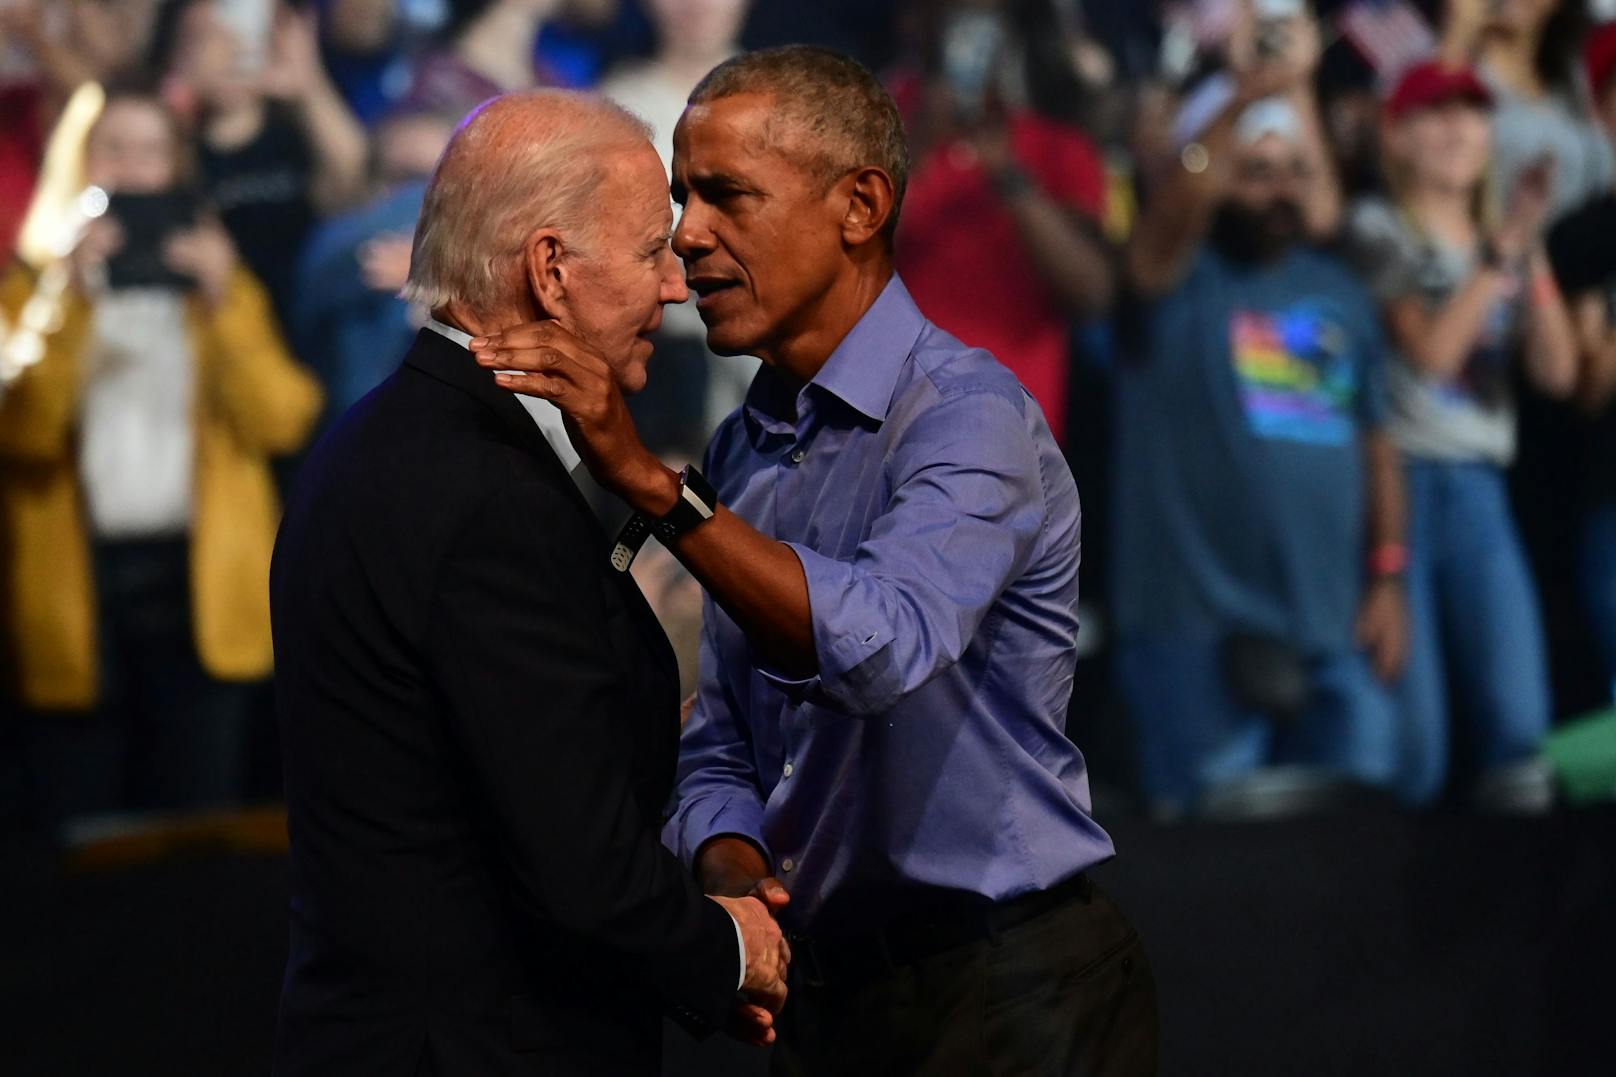 Machen gemeinsam Wahlkampf: Joe Biden (links) und Barack Obama in Philadelphia.